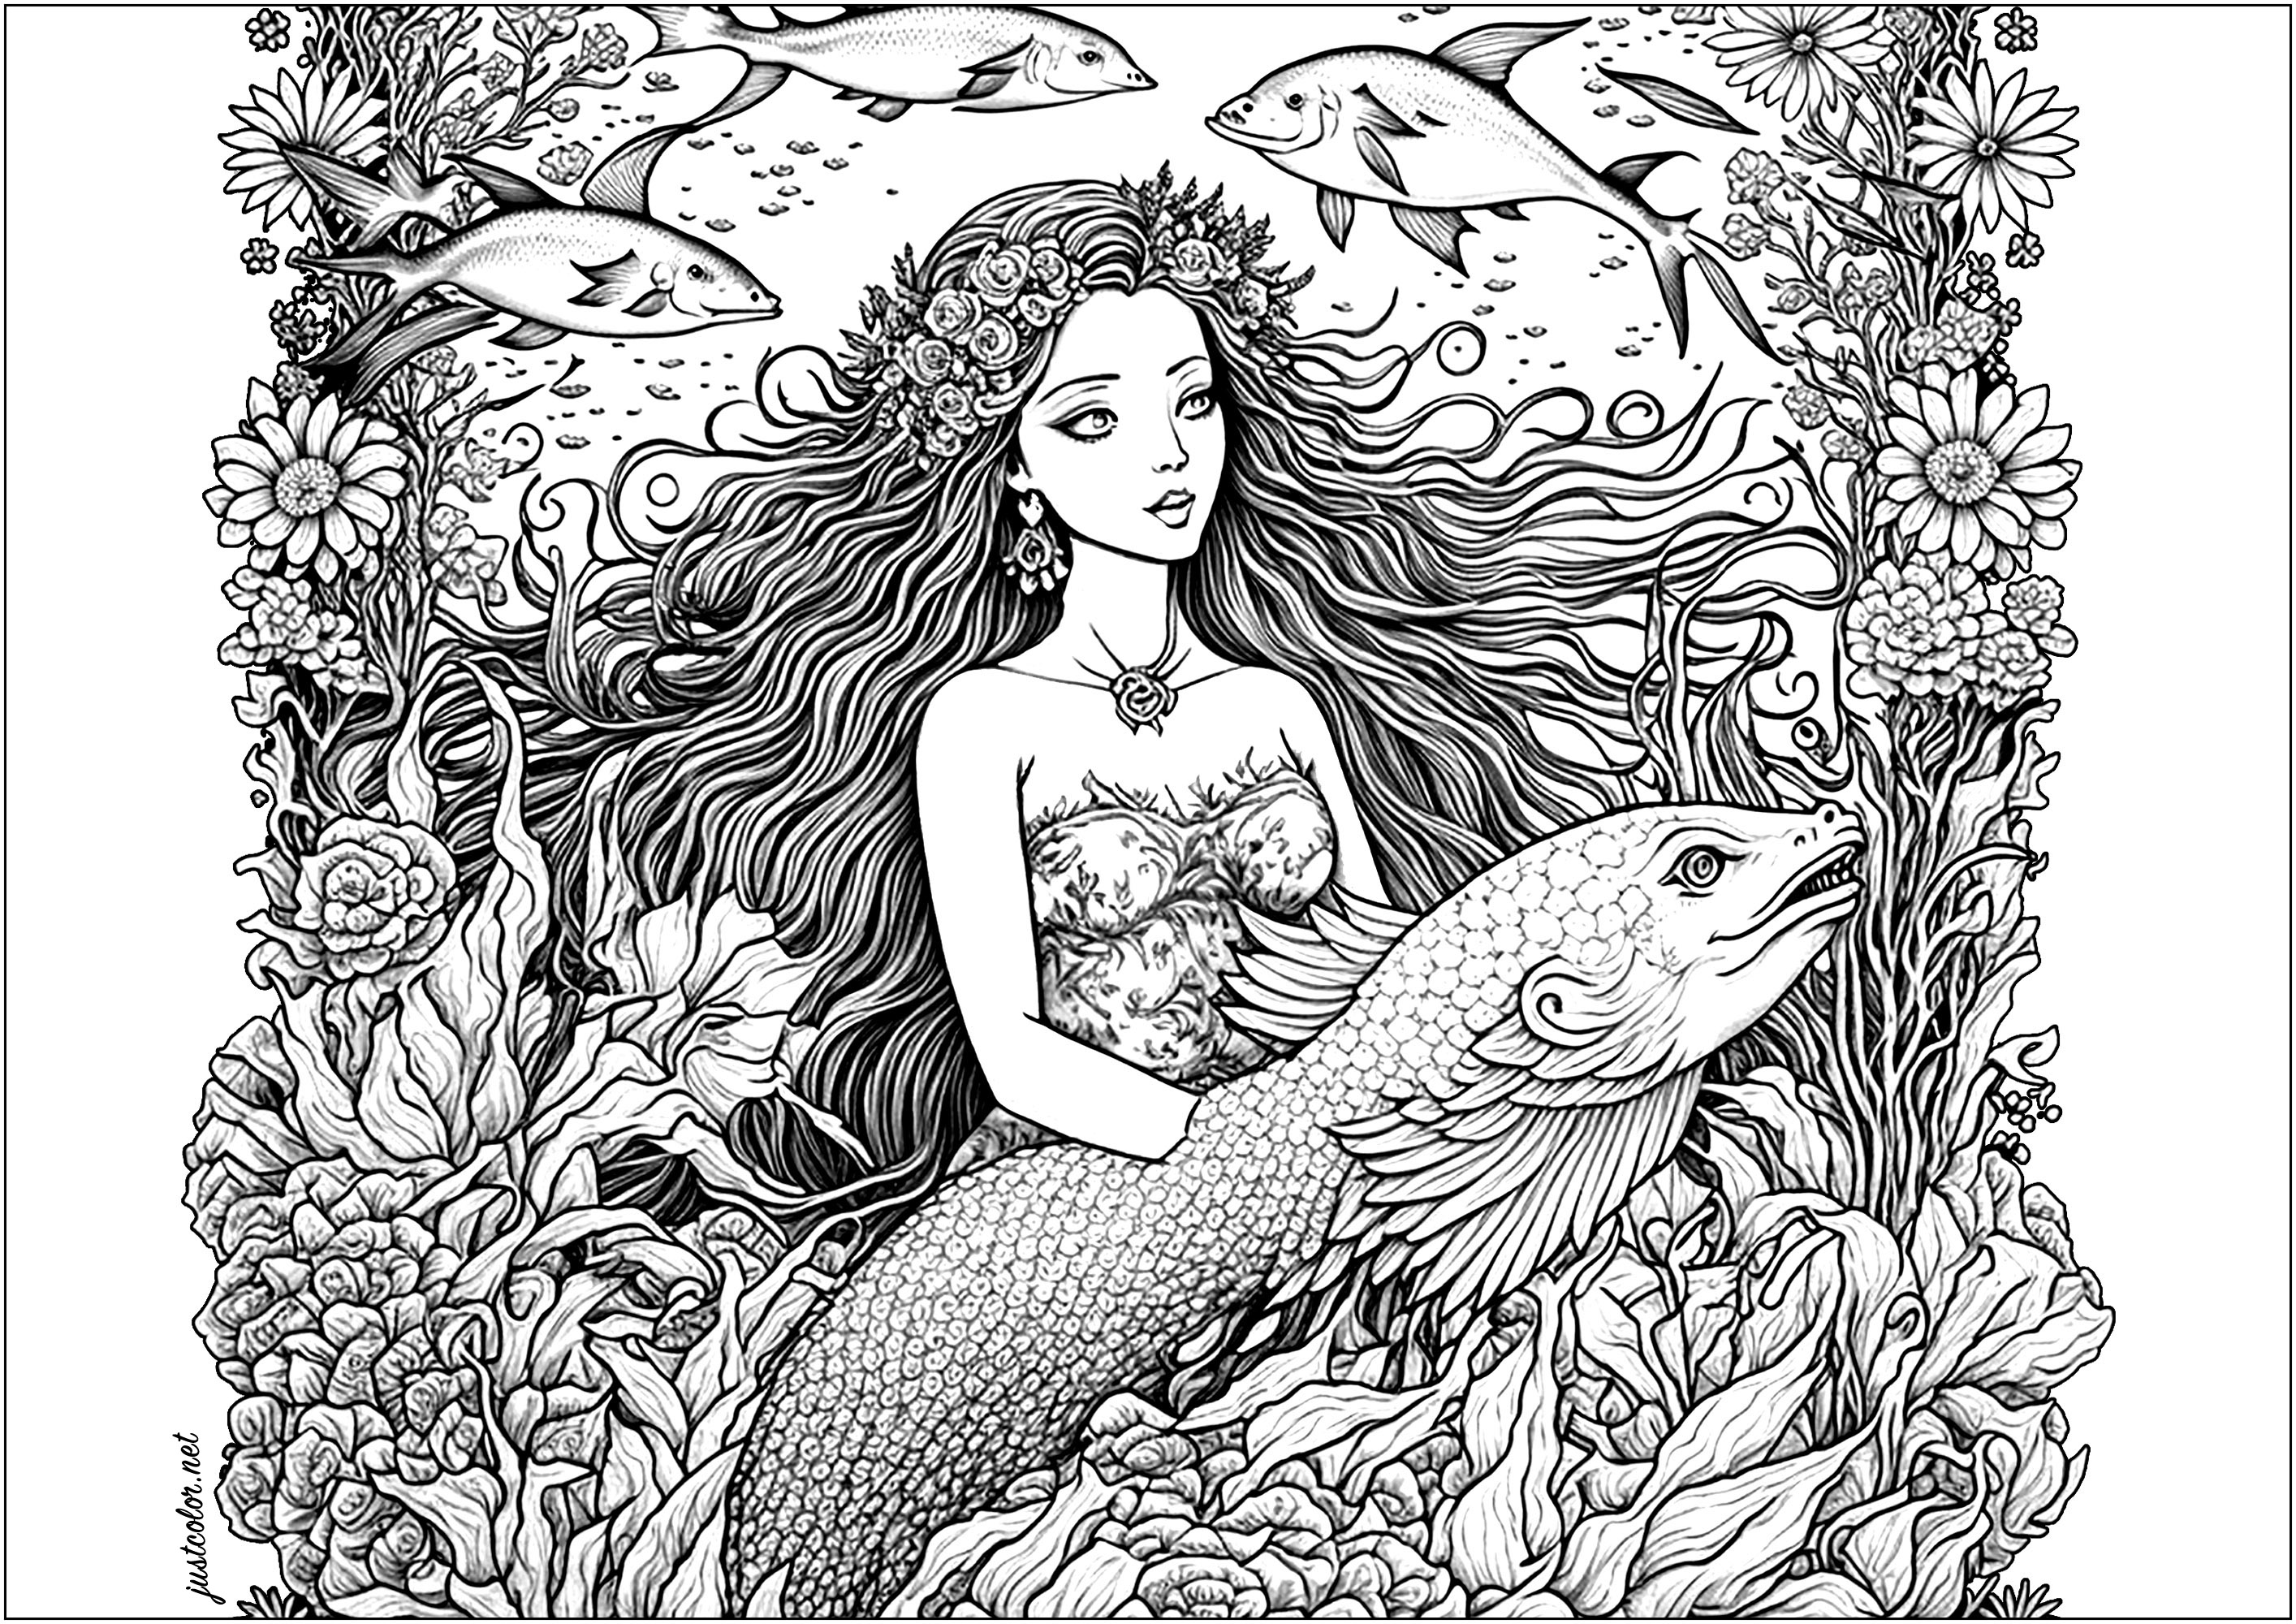 Sirène nageant gracieusement dans l'océan, avec un gros poisson. Elle est belle, ses longs cheveux flottant derrière elle, avec son ami poisson nageant à ses côtés. Ensemble, ils ont exploré les profondeurs de la mer, découvrant des choses nouvelles et passionnantes.